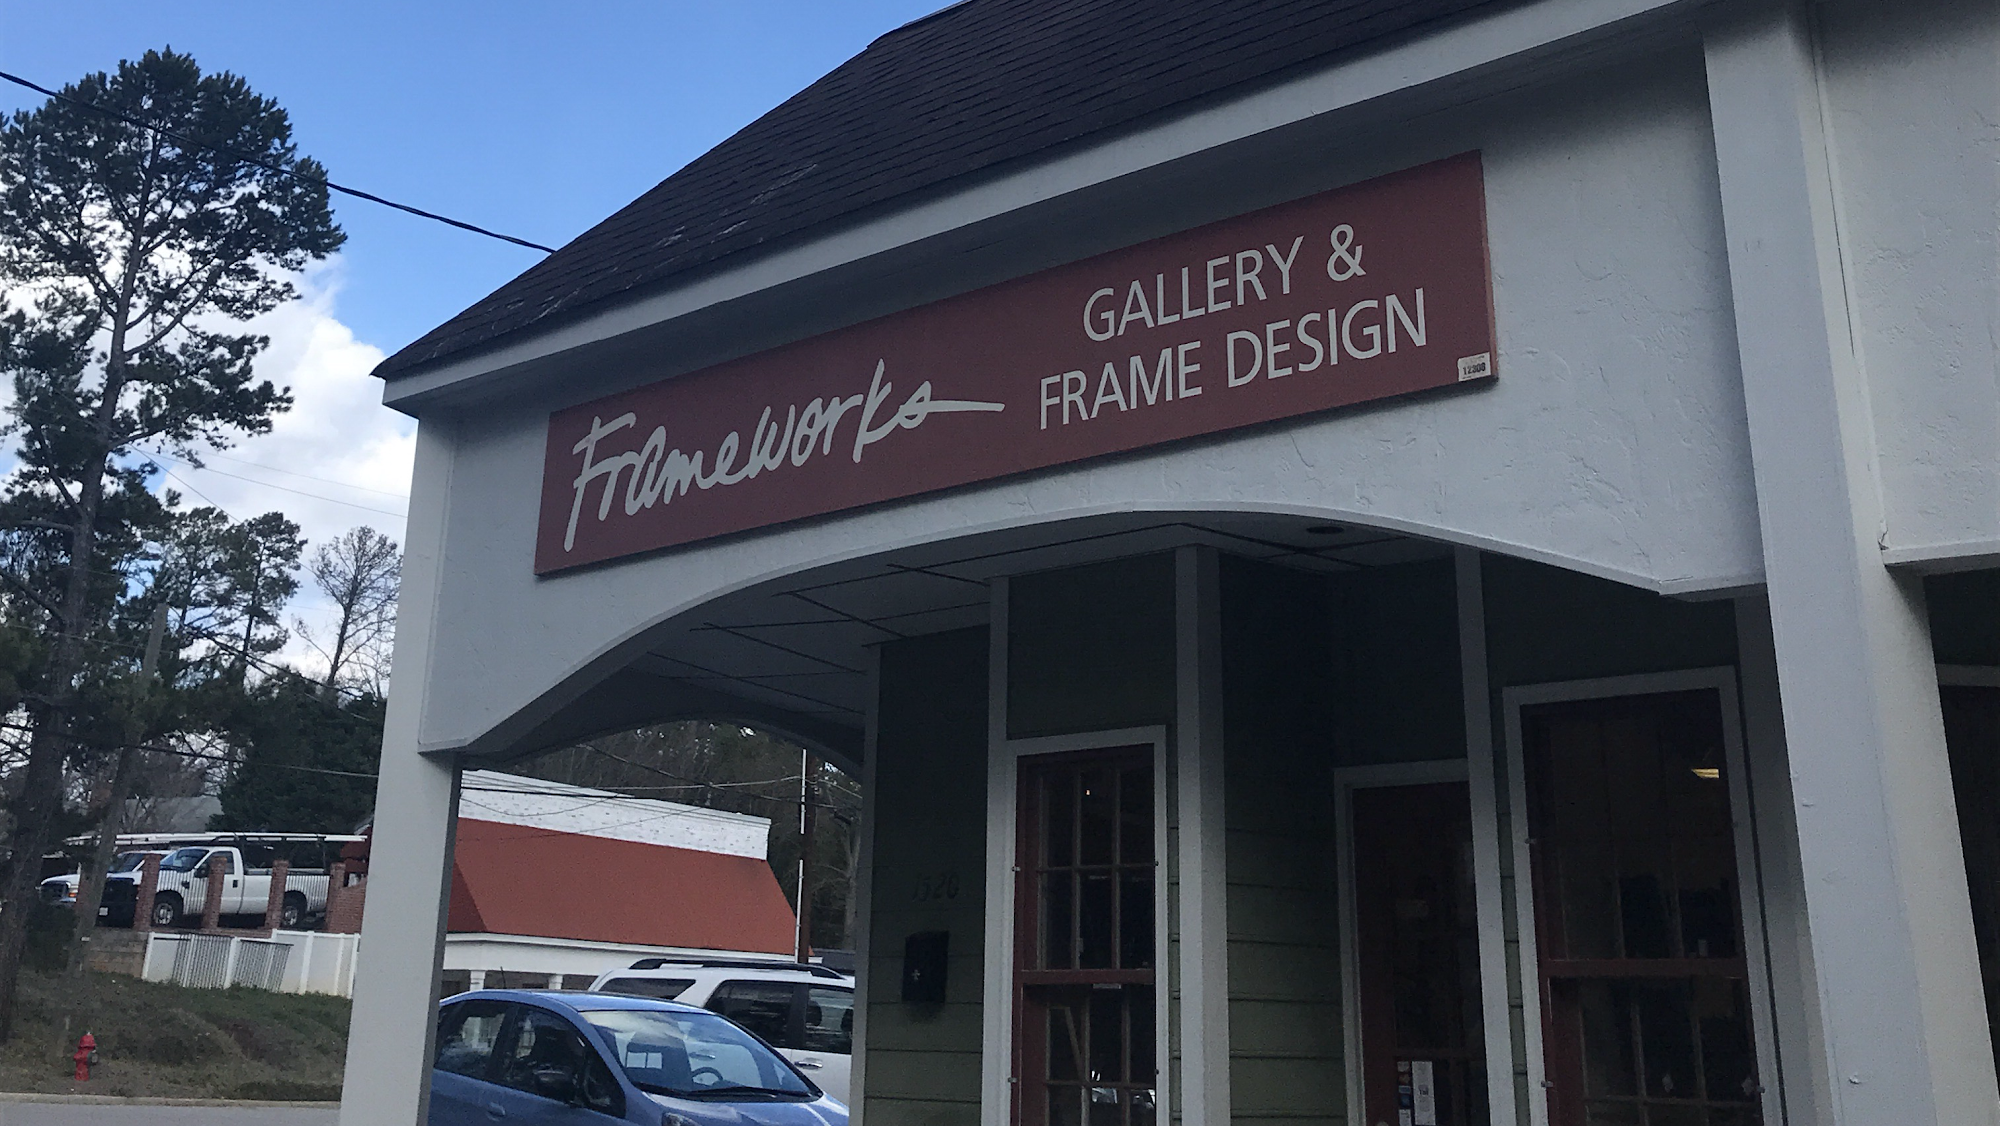 Frameworks Gallery and Frame Design